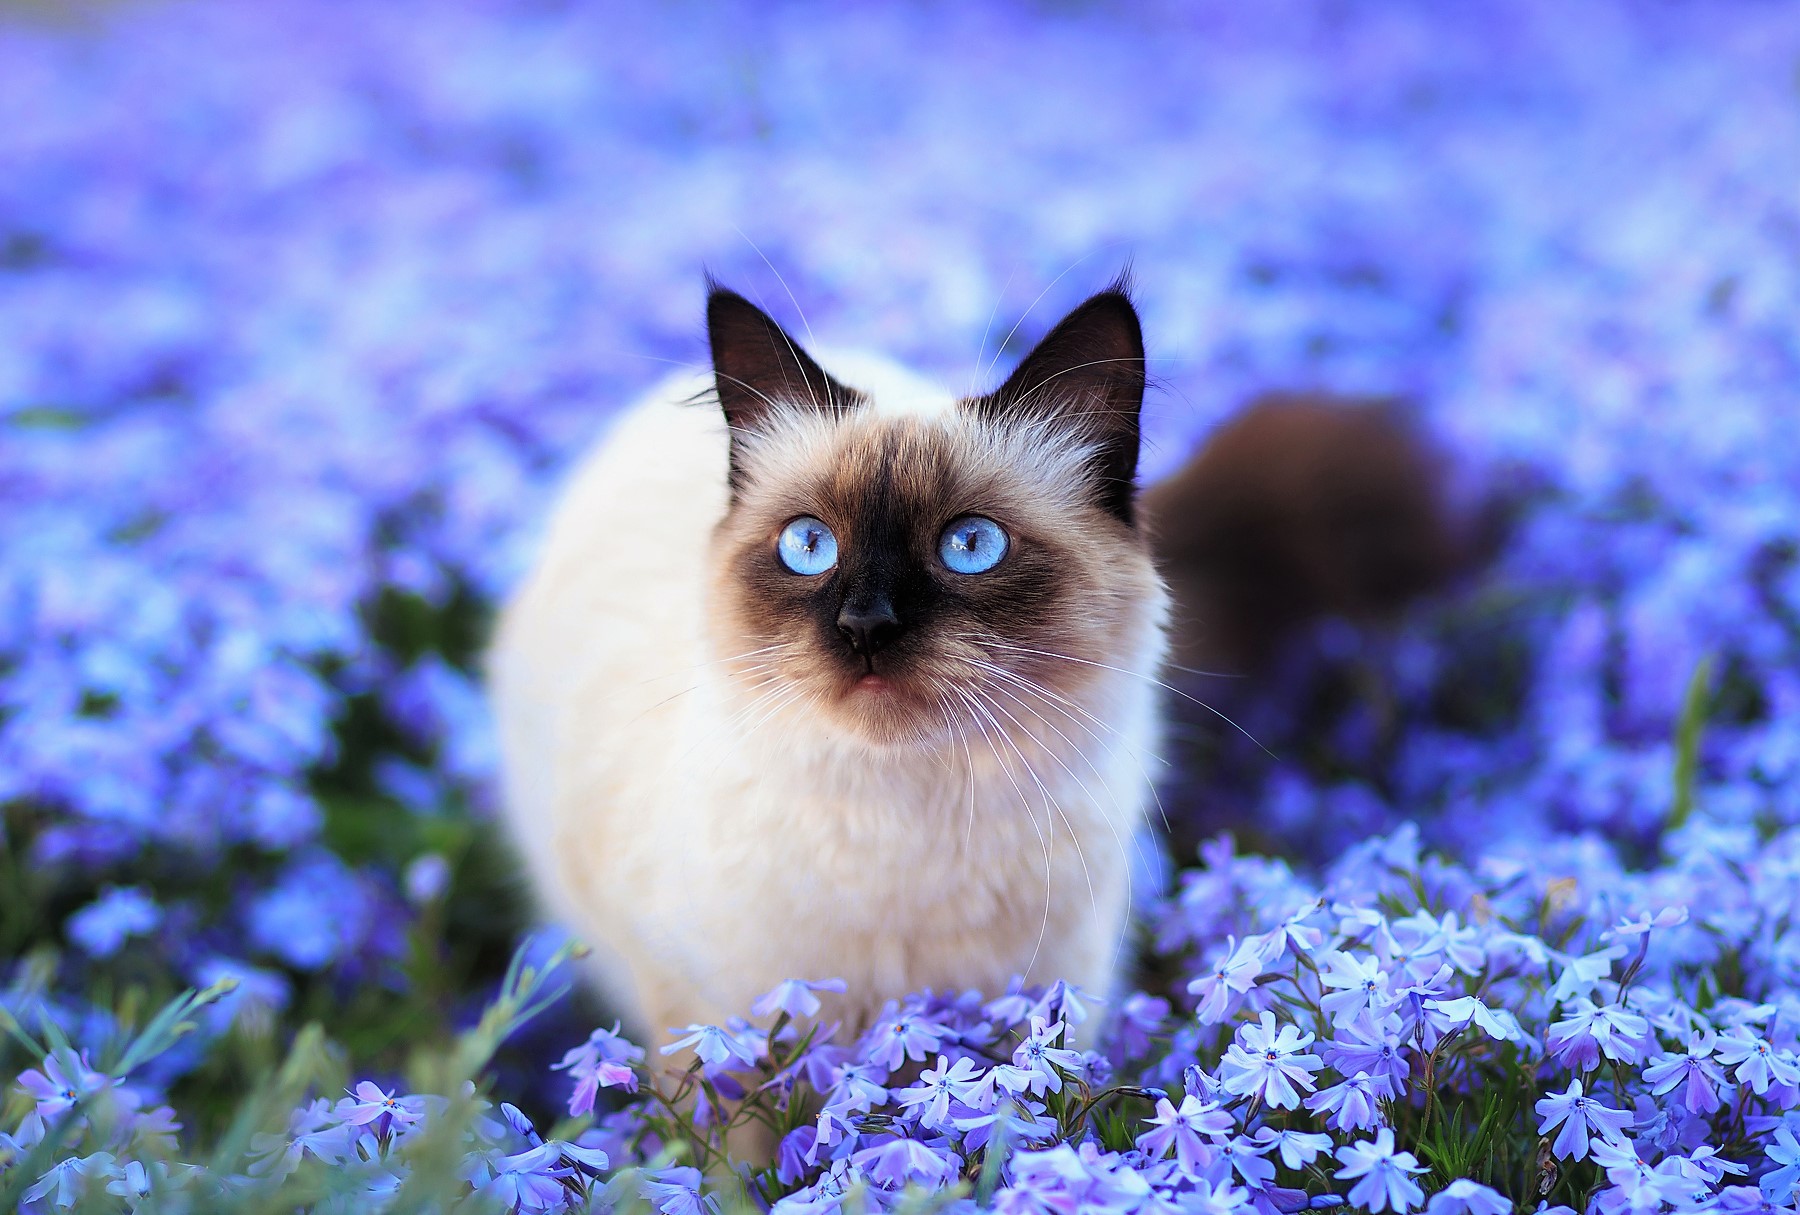 Blue-Eyed Cat in Flower Field by Alina Shevelina